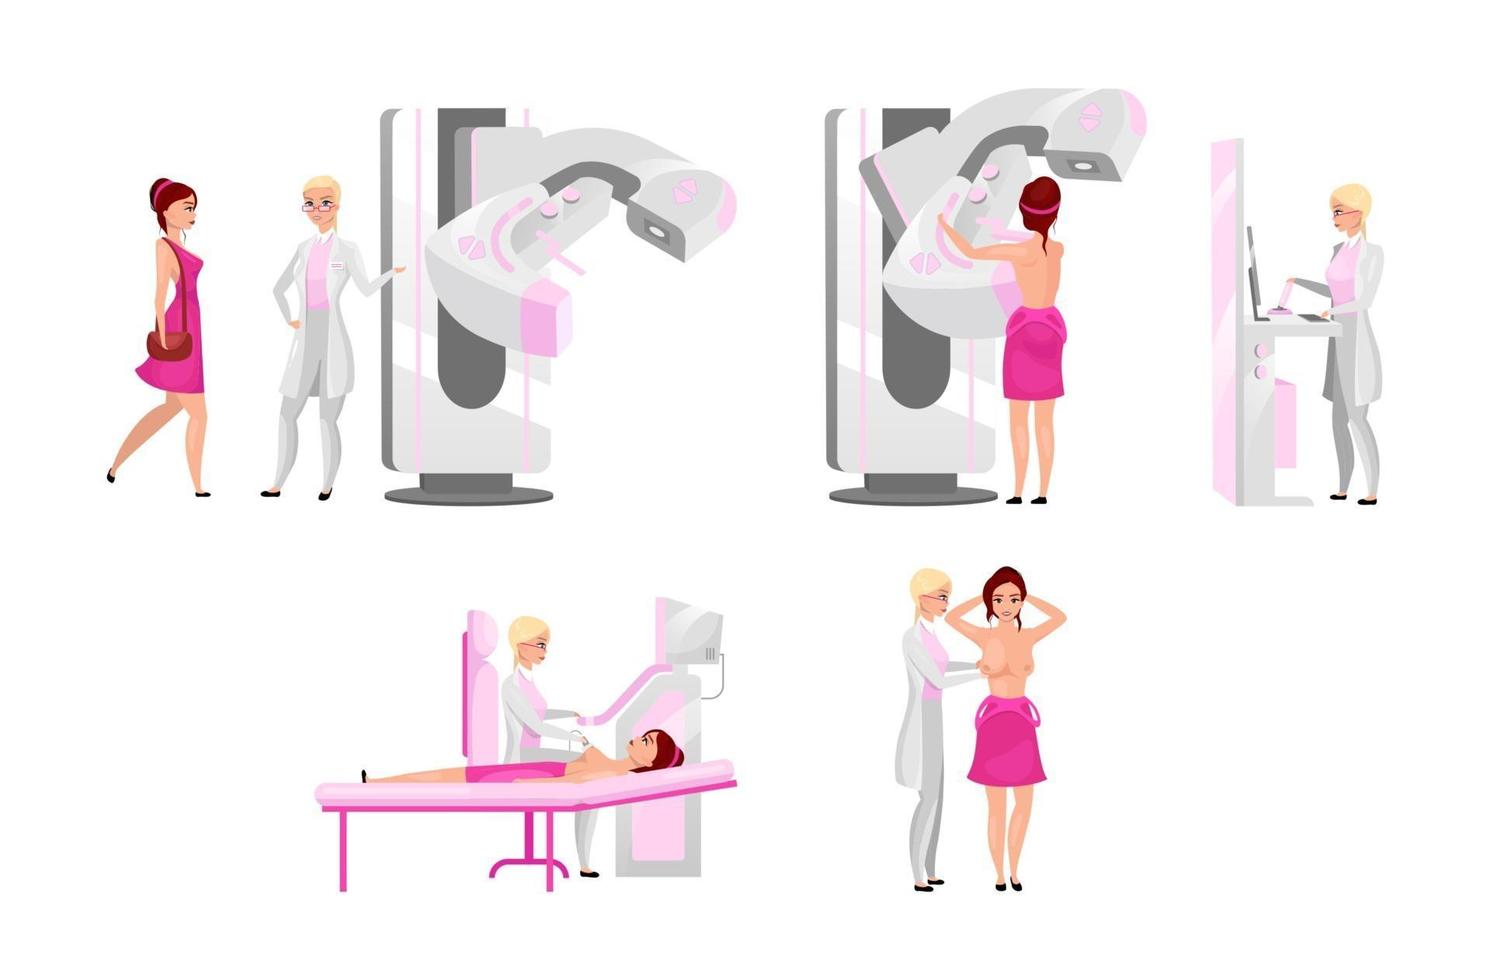 borst medisch onderzoek platte illustraties set. mammografie, diagnostische medische echografie en palpatie. borstkanker preventie examen concept. zoogdierarts en stripfiguur voor vrouwelijke patiënten vector